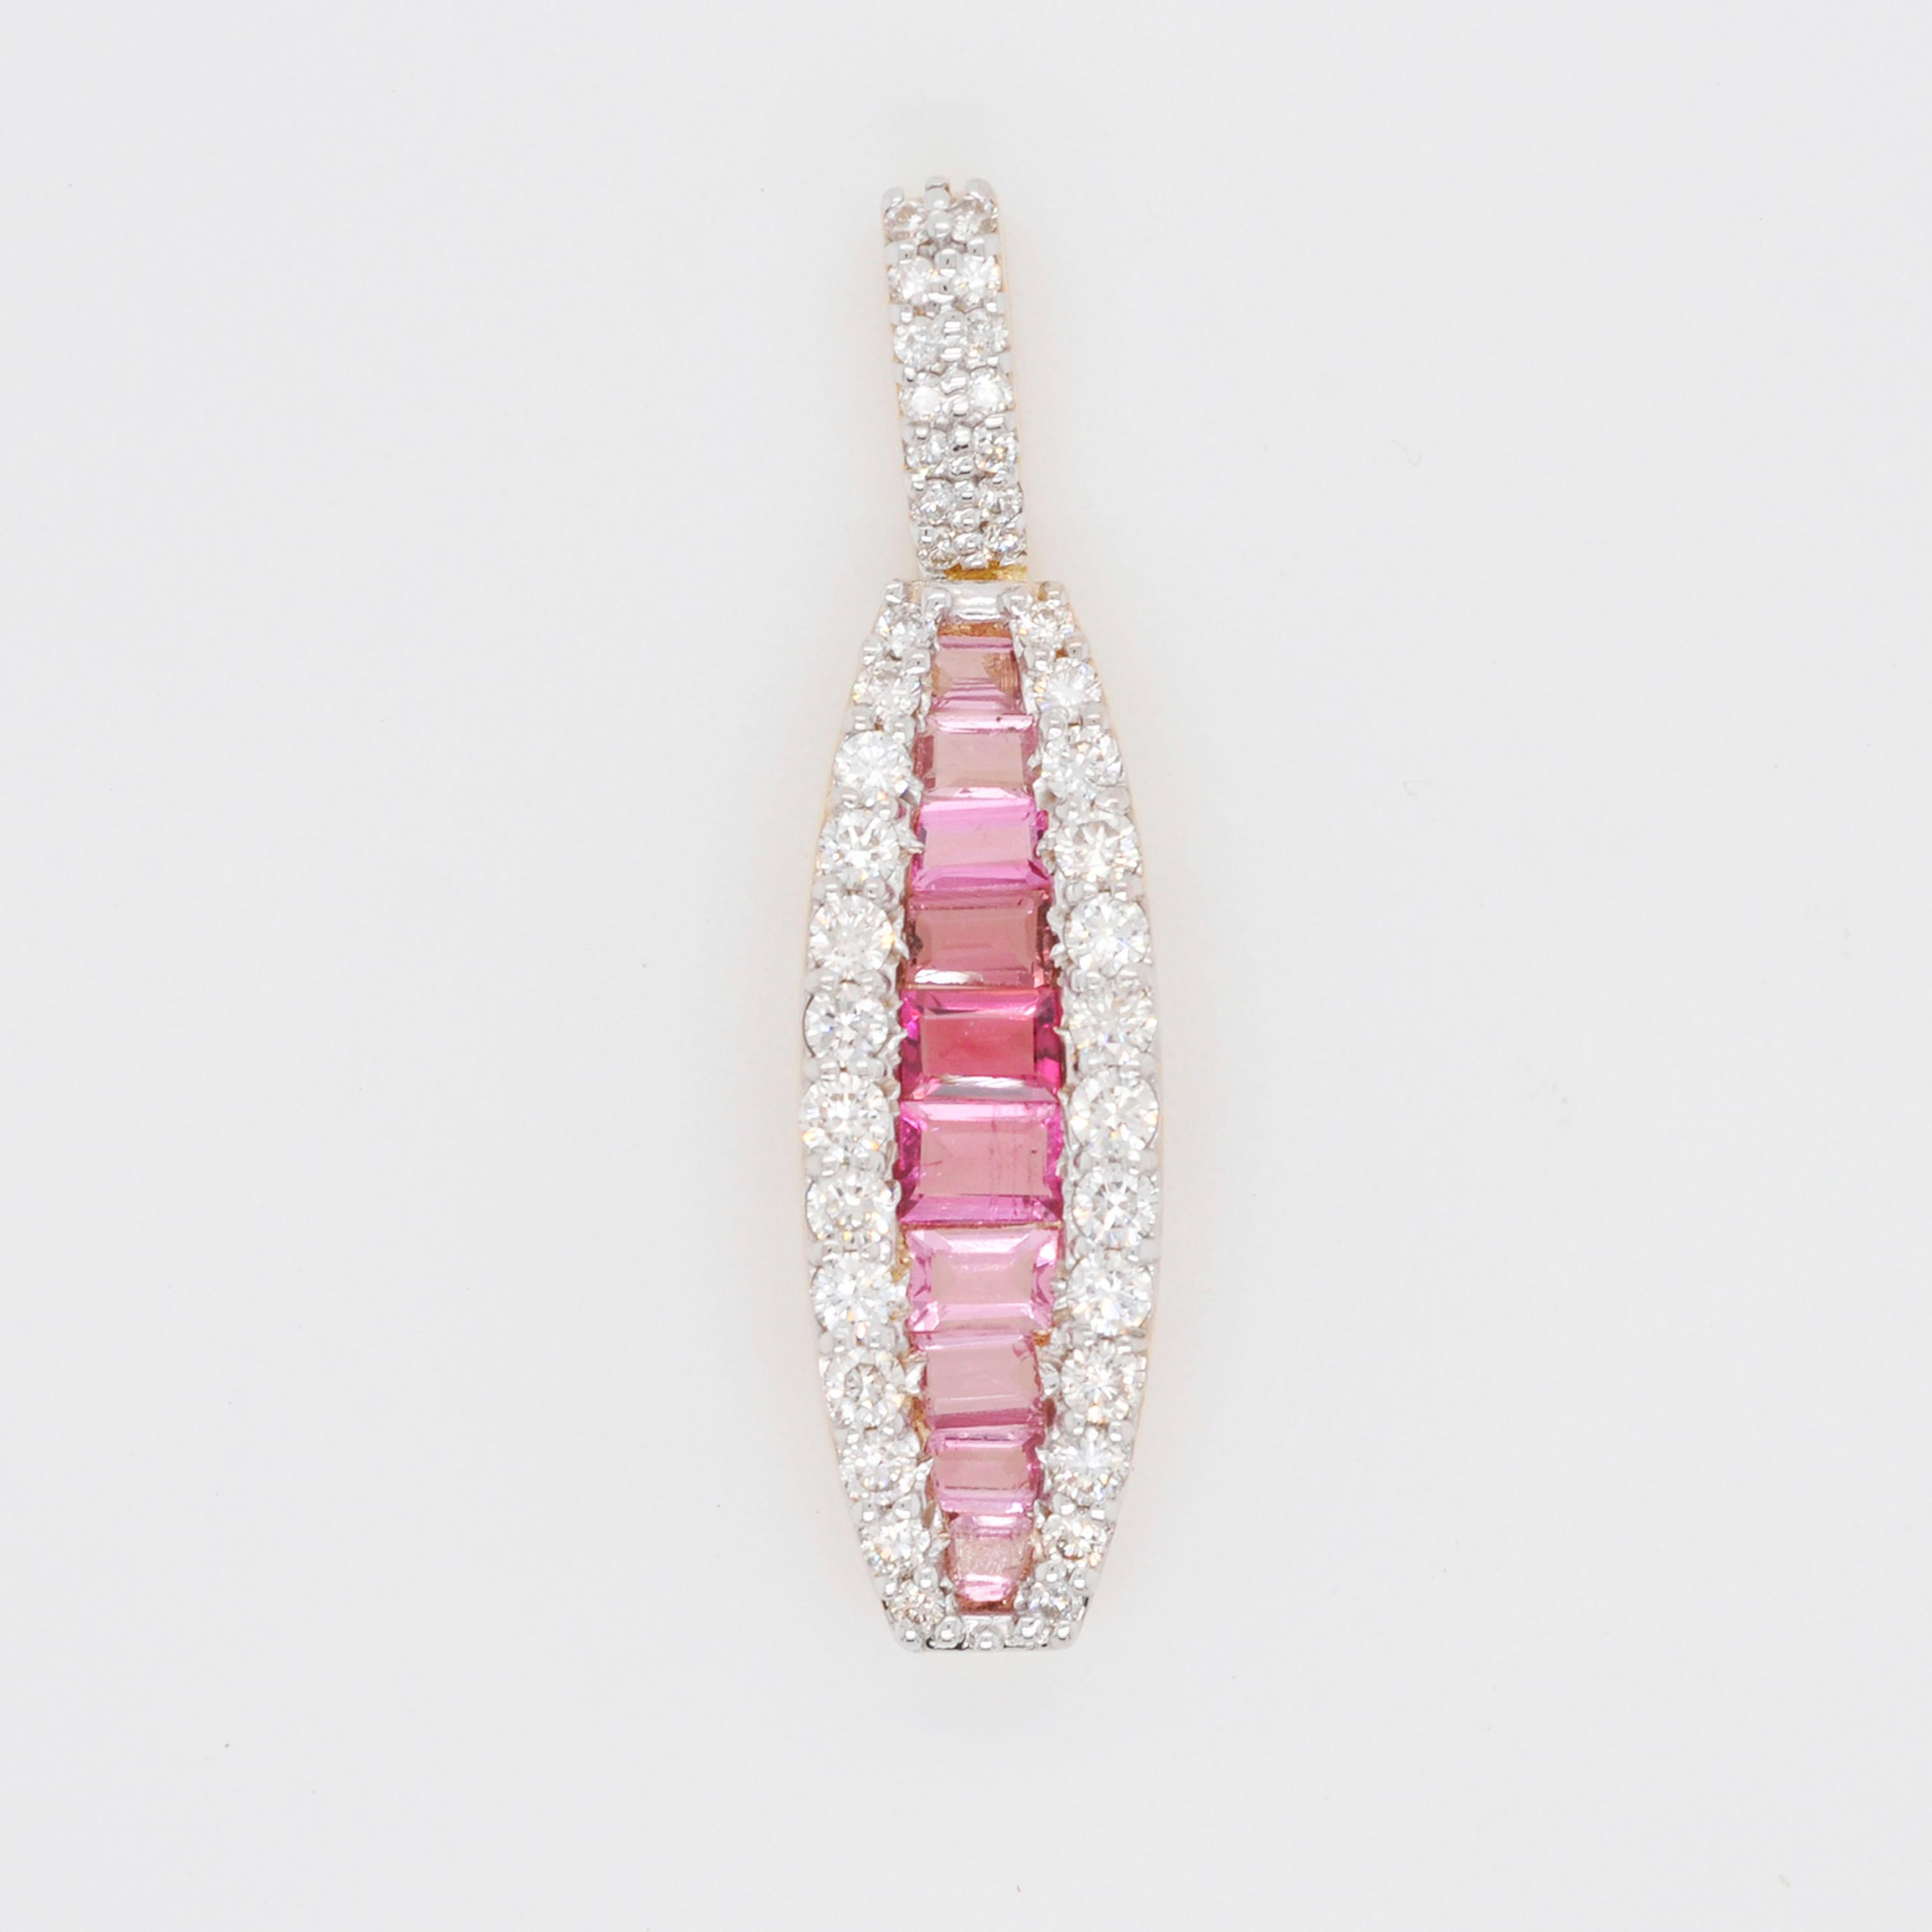 18 Karat Gold Kanal gesetzt rosa Turmalin Baguette Diamant linearen Anhänger Halskette.

Der bezaubernde Anhänger mit den rosafarbenen Turmalinen, die in eine entsprechende Schicht von mikrogefassten Diamanten auf beiden Seiten eingebettet sind, ist